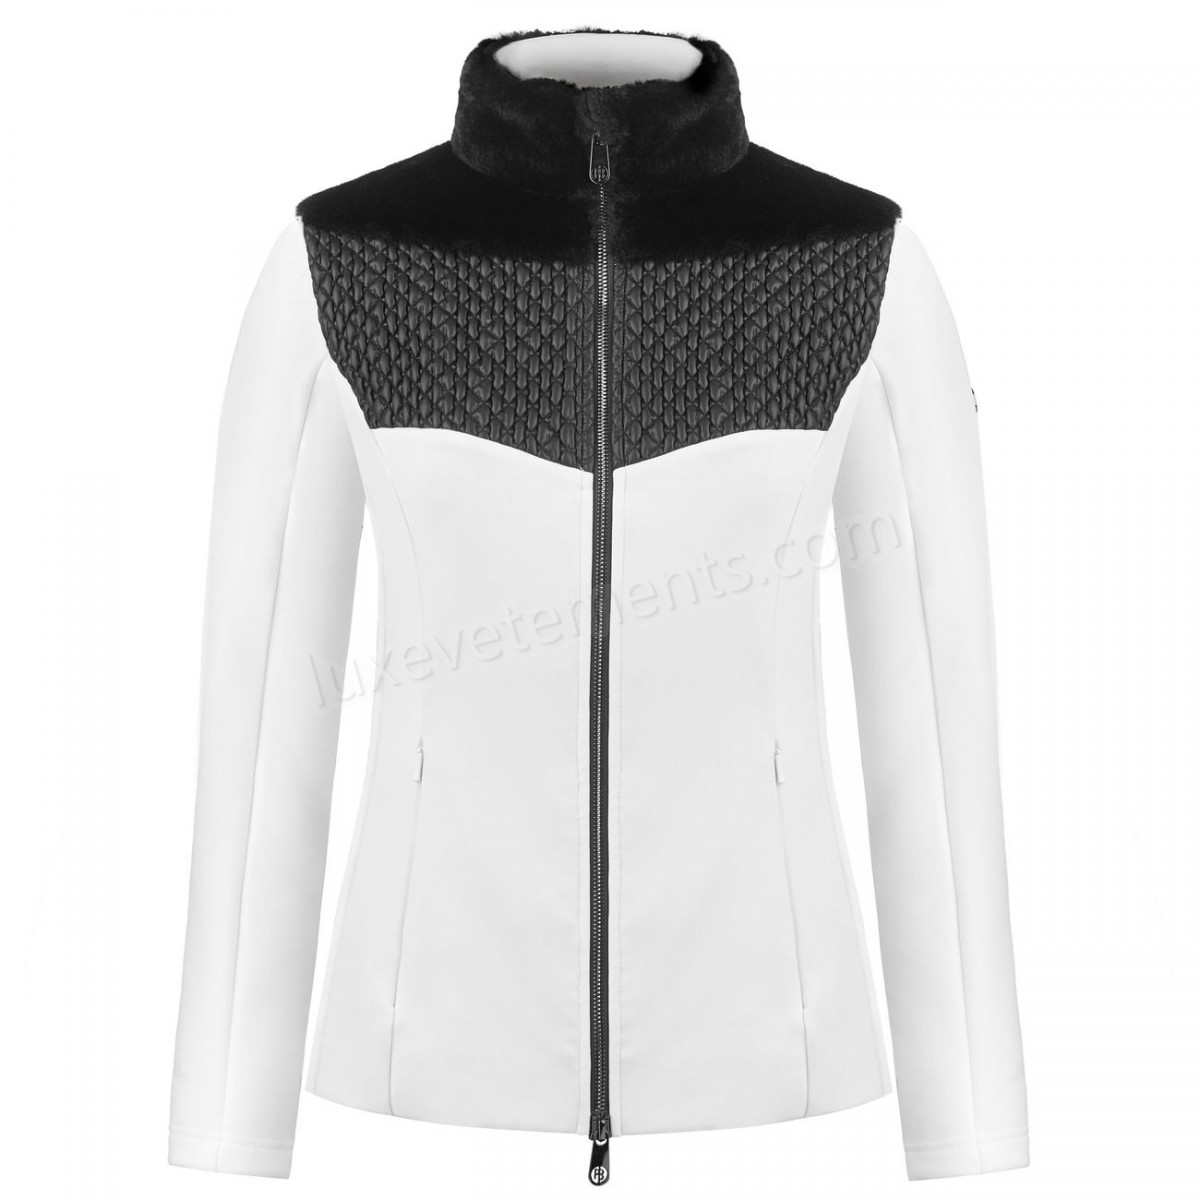 Poivre Blanc-Sports d'hiver femme POIVRE BLANC Veste En Polaire Poivre Blanc Hybrid Stretch Fleece Jacket 1600 Multico White Femme Vente en ligne - -5